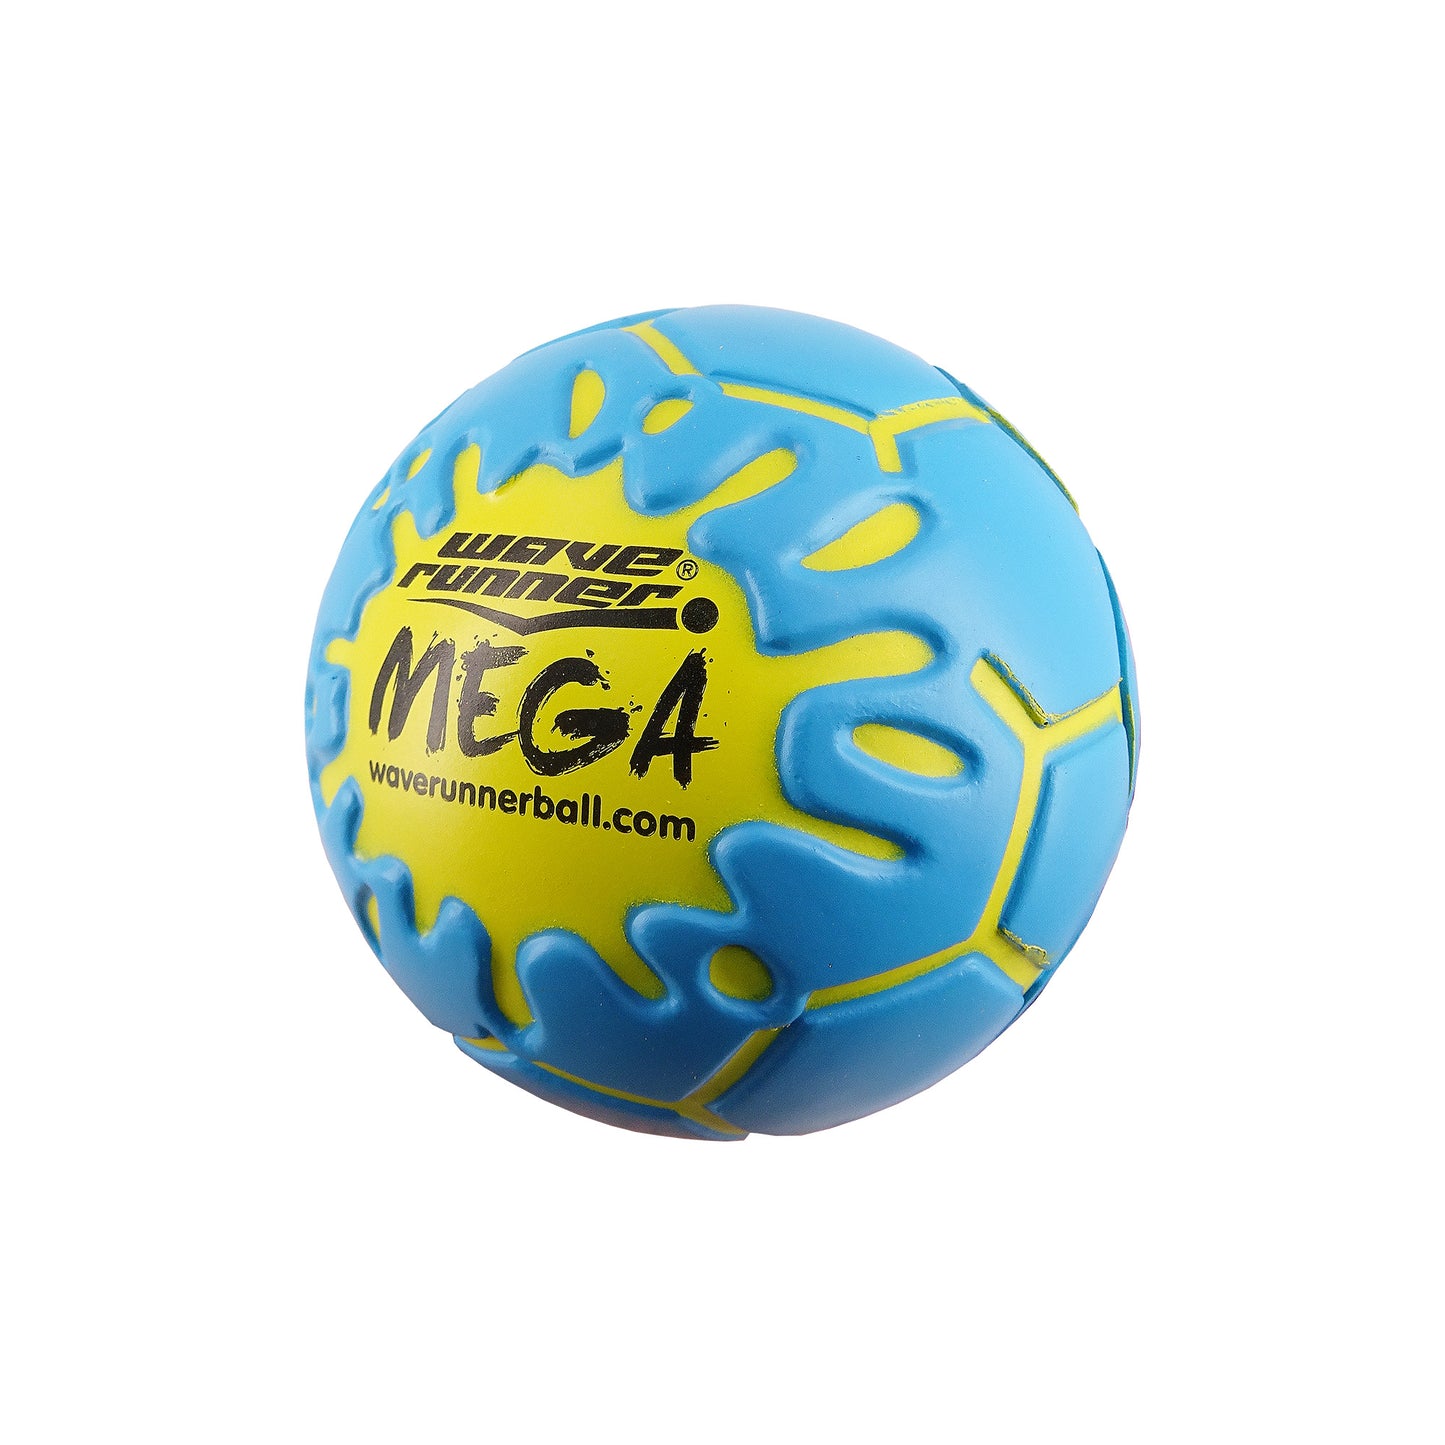 MEGA Ball Soccer Series